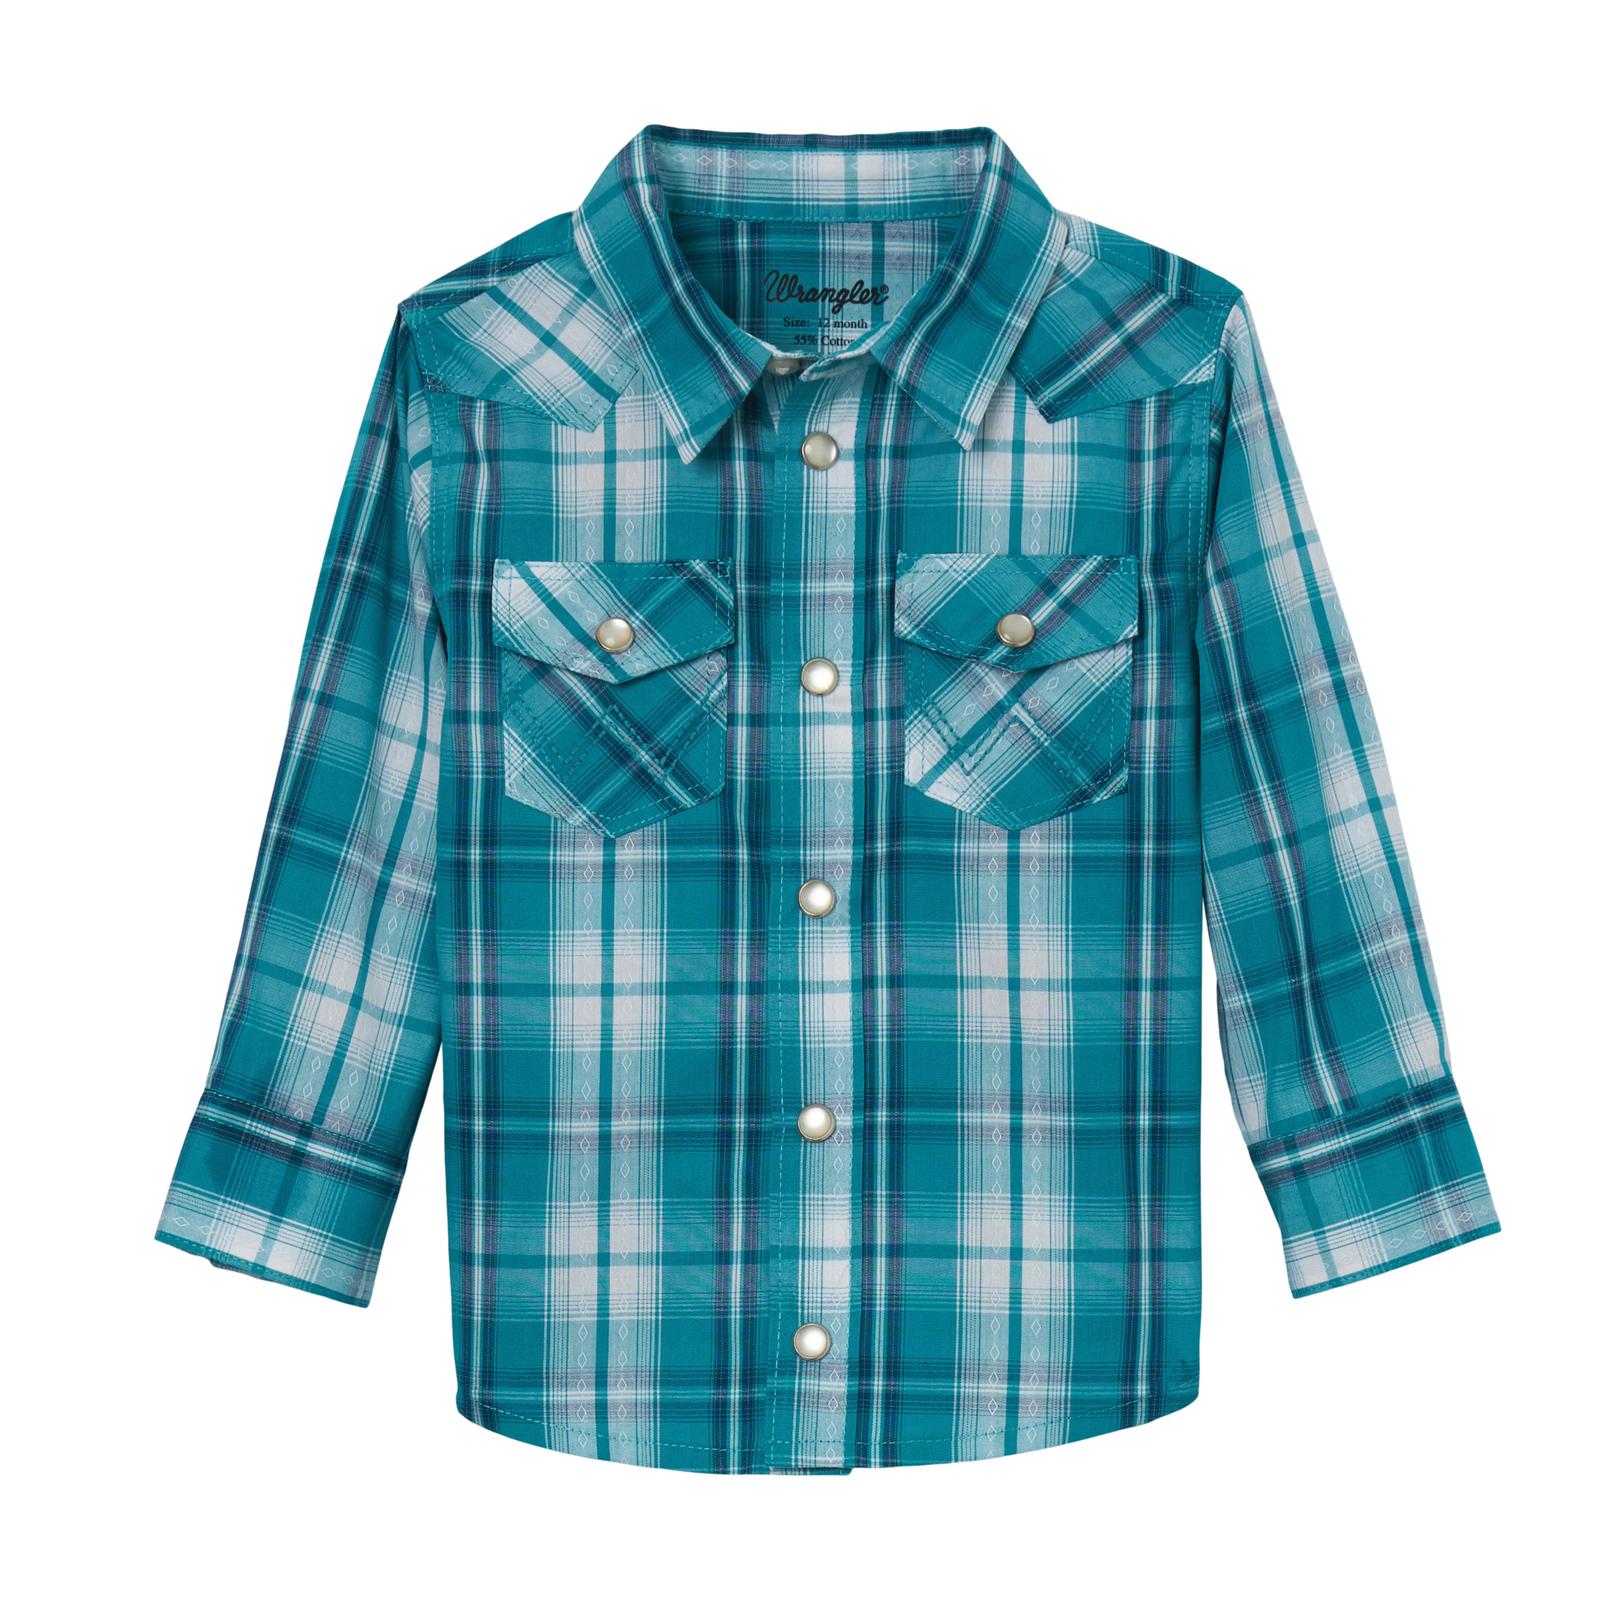 Wrangler Infant/Toddler Boy's Long Sleeve Shirt STYLE 112344686